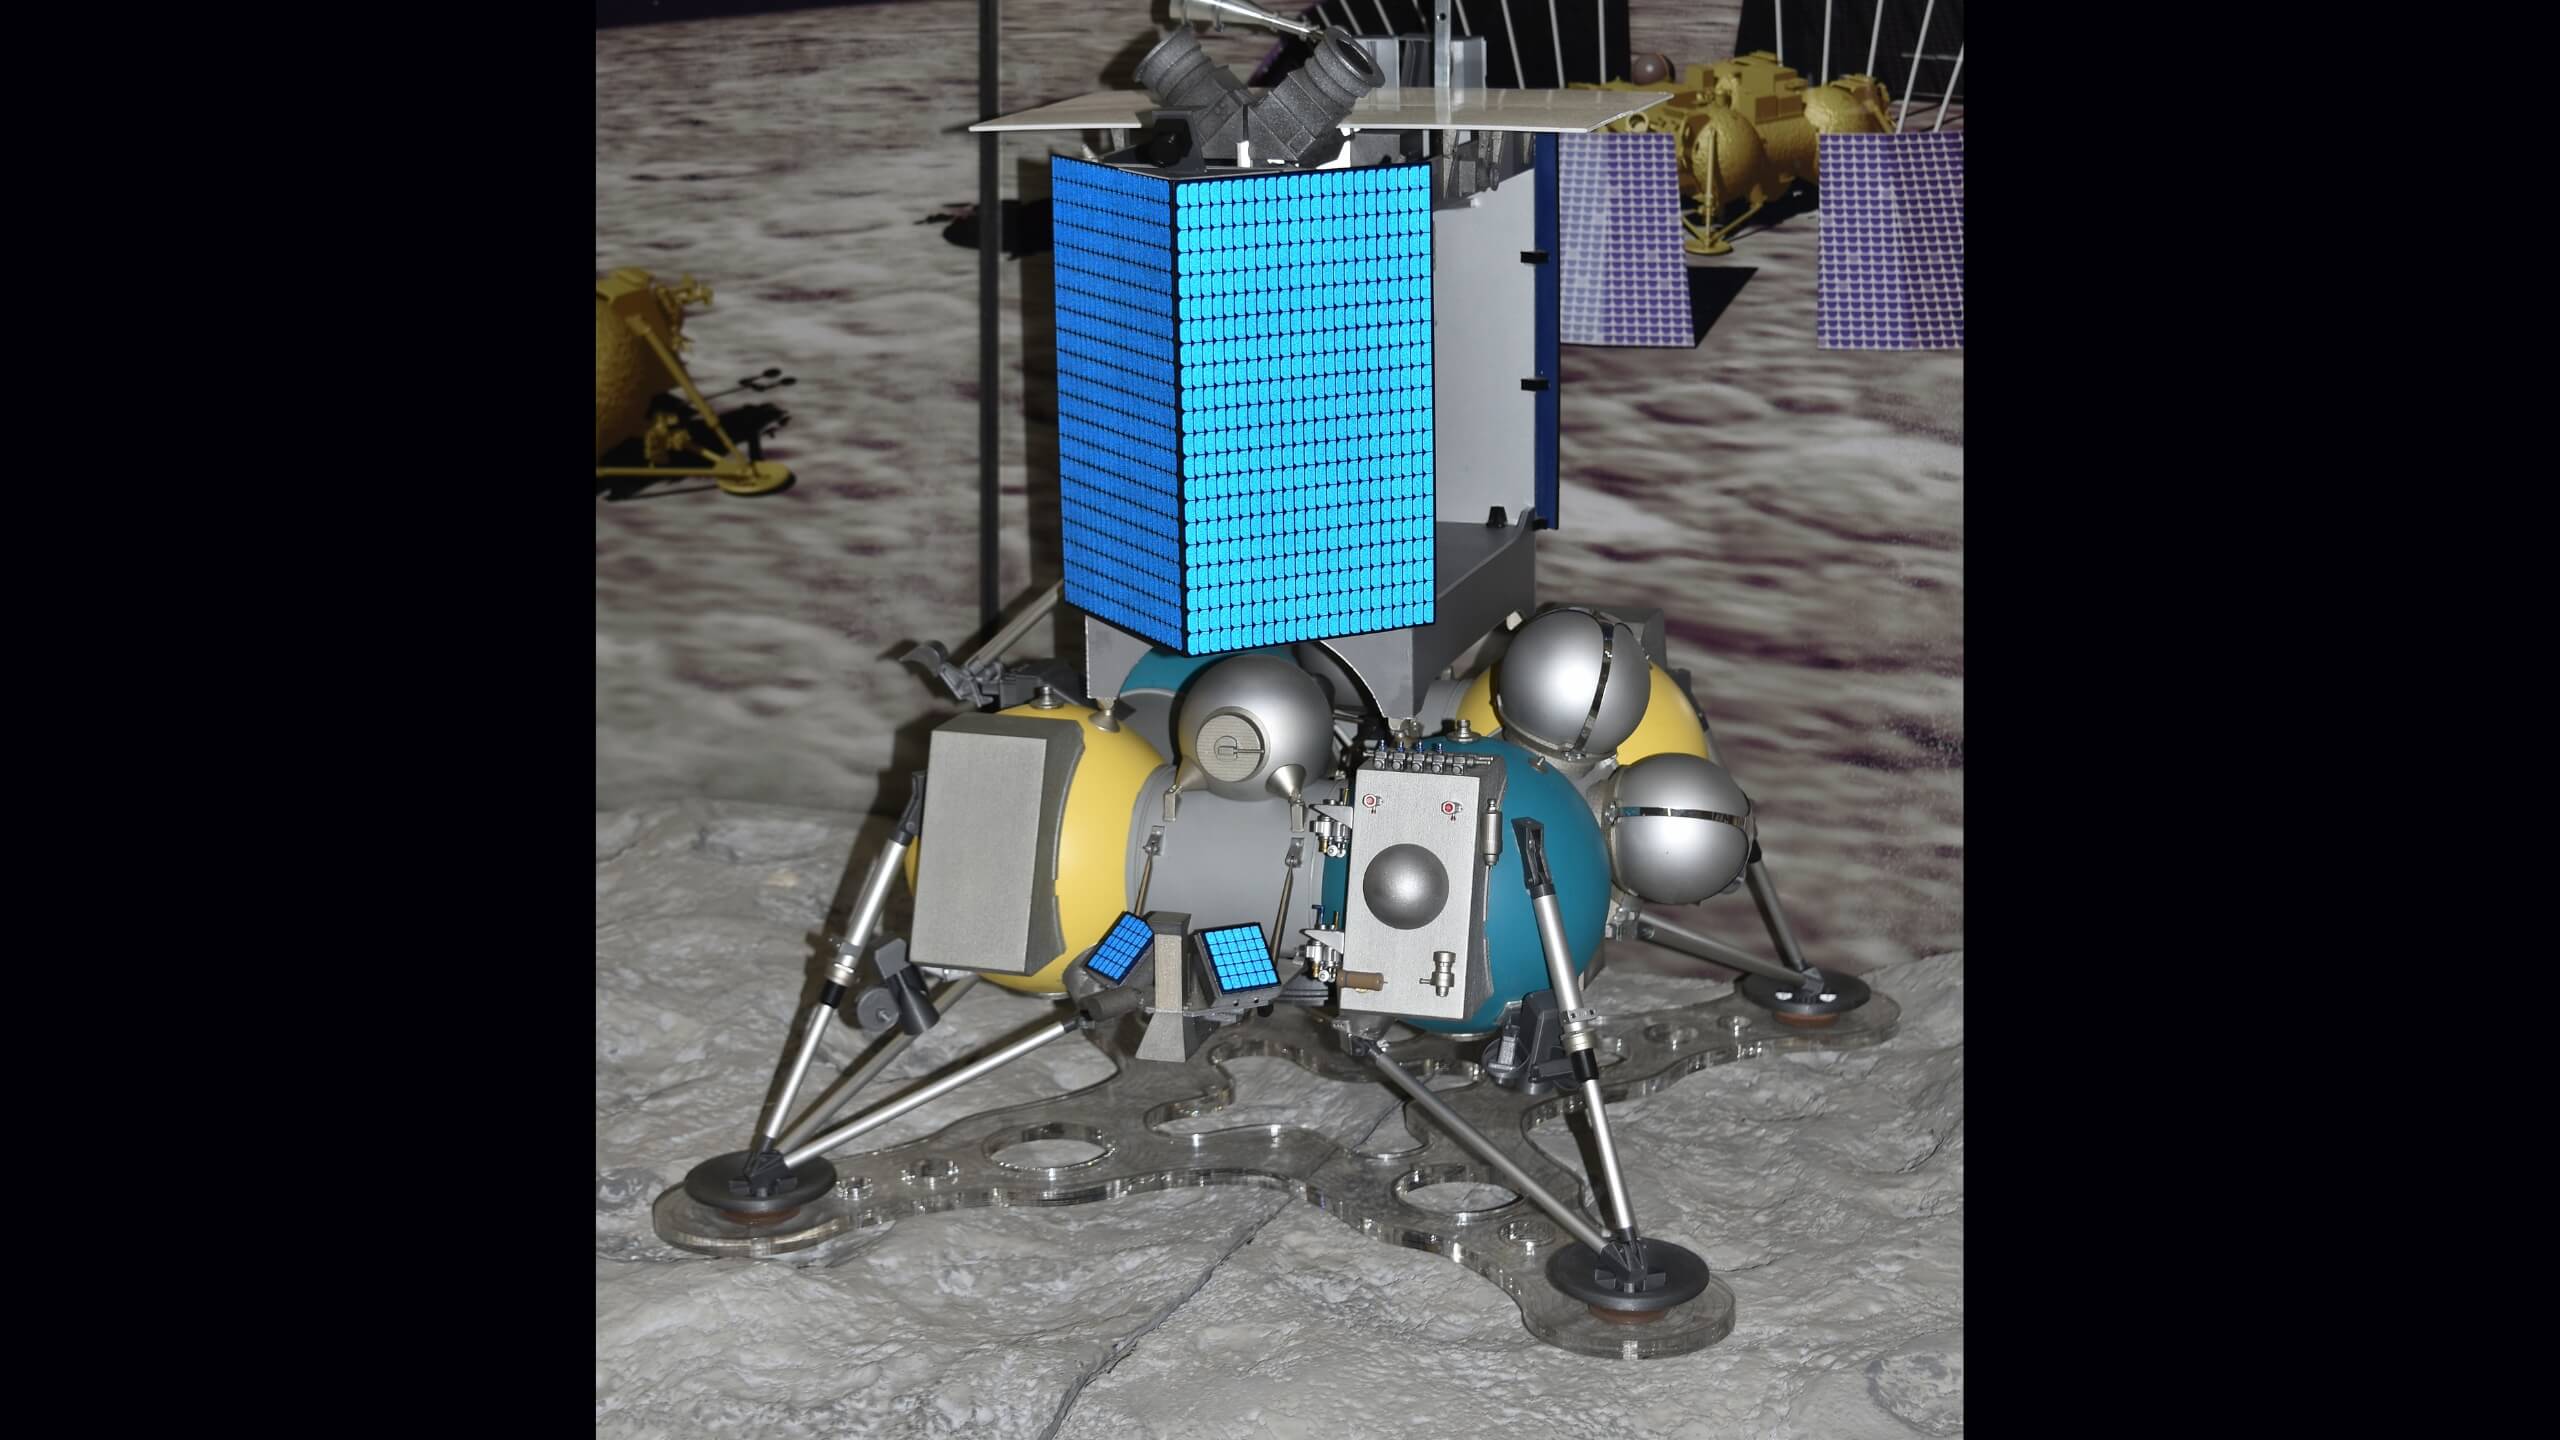 Artistic illustraion of the Luna 25 lander